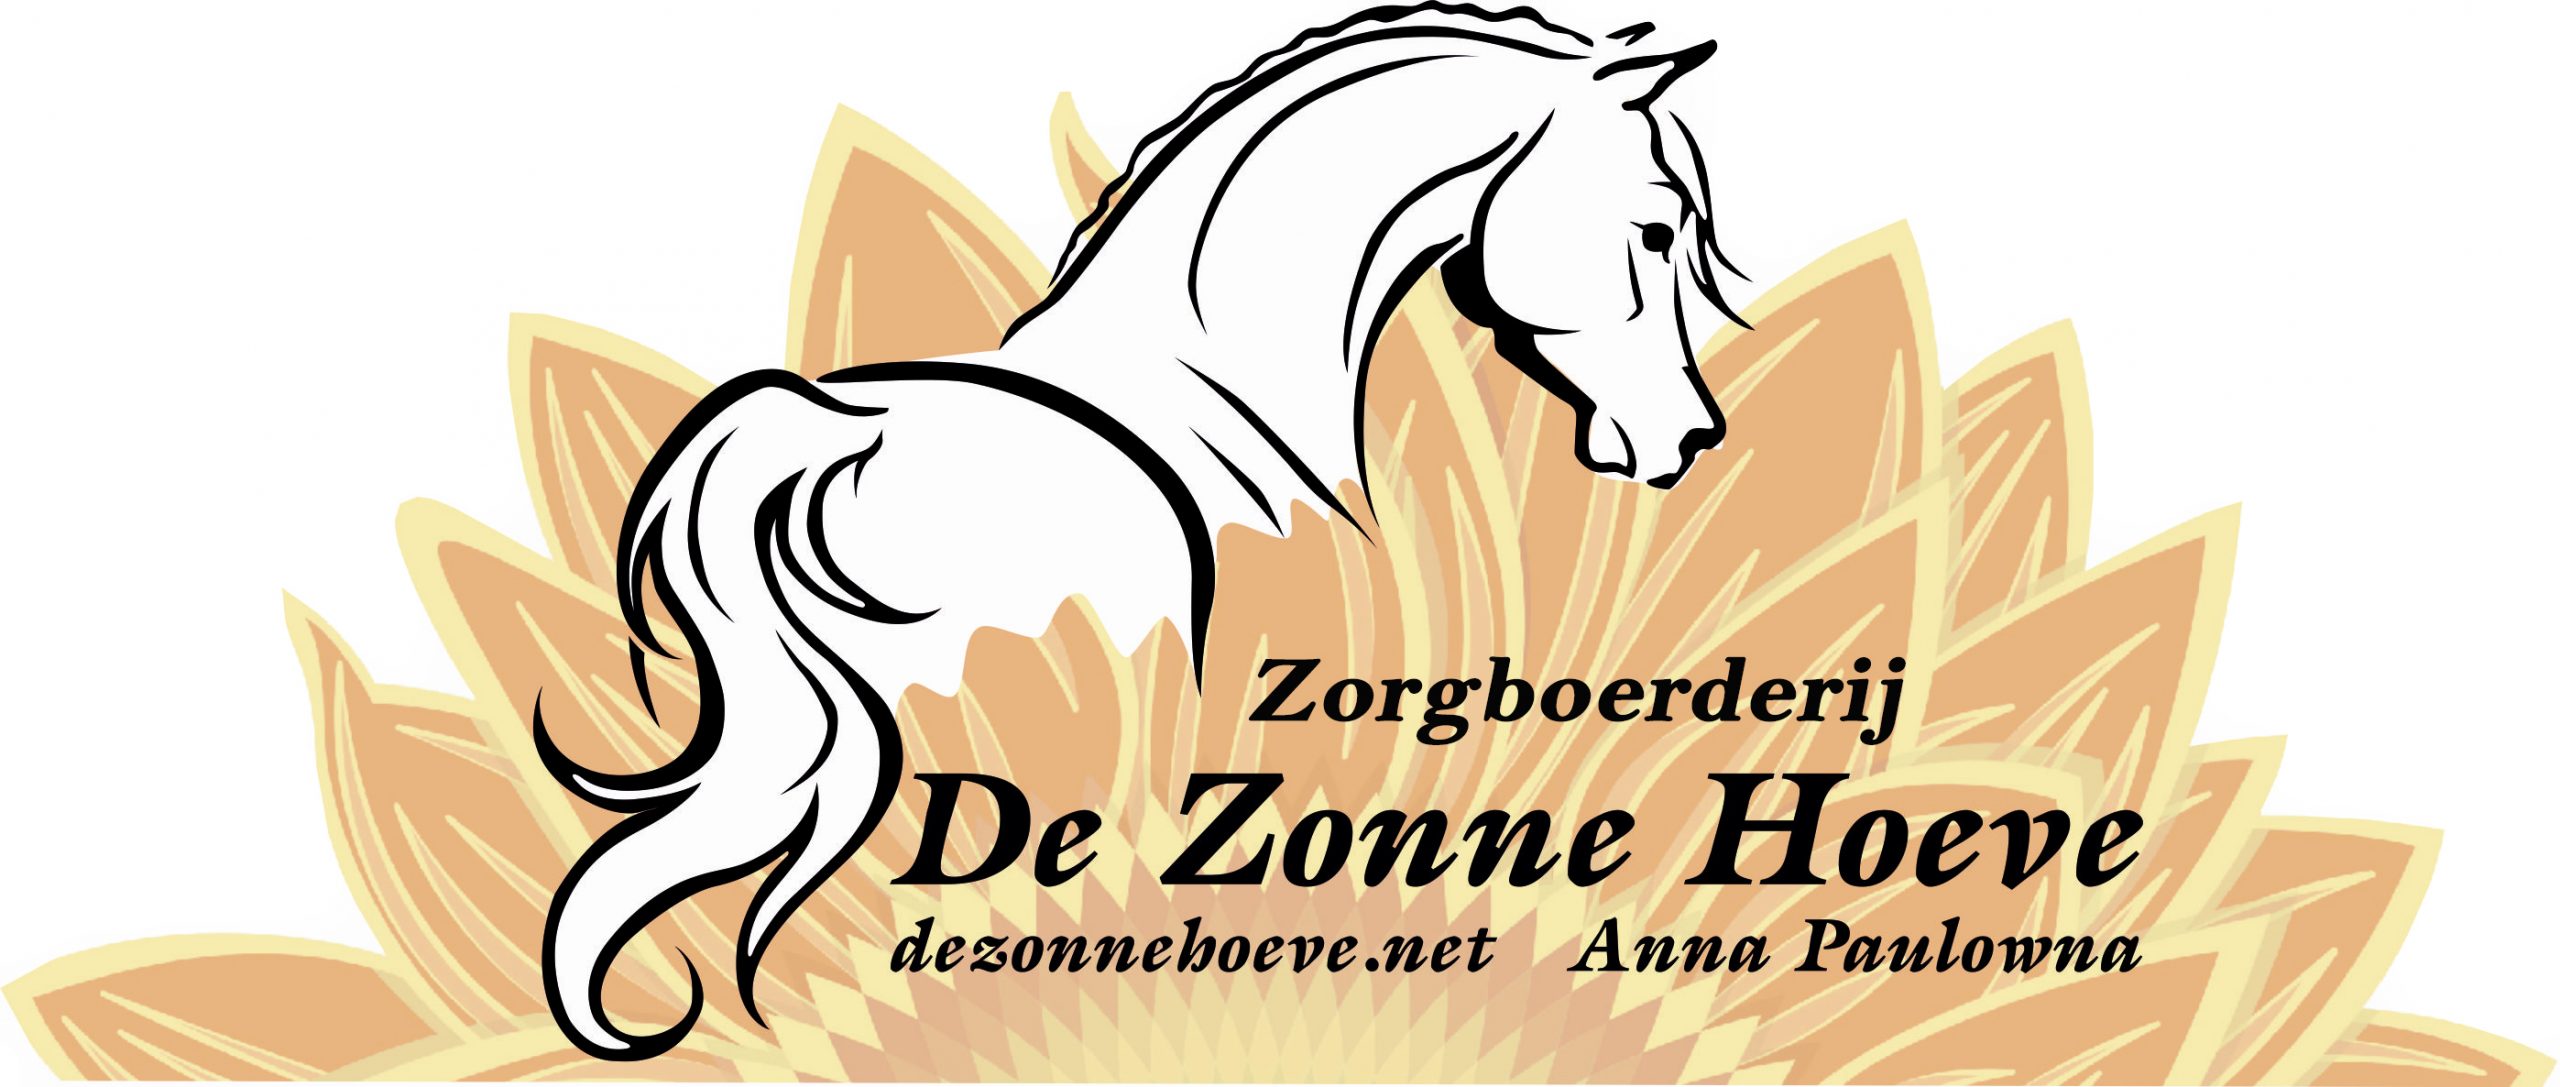 OVAP De Zonne Hoeve